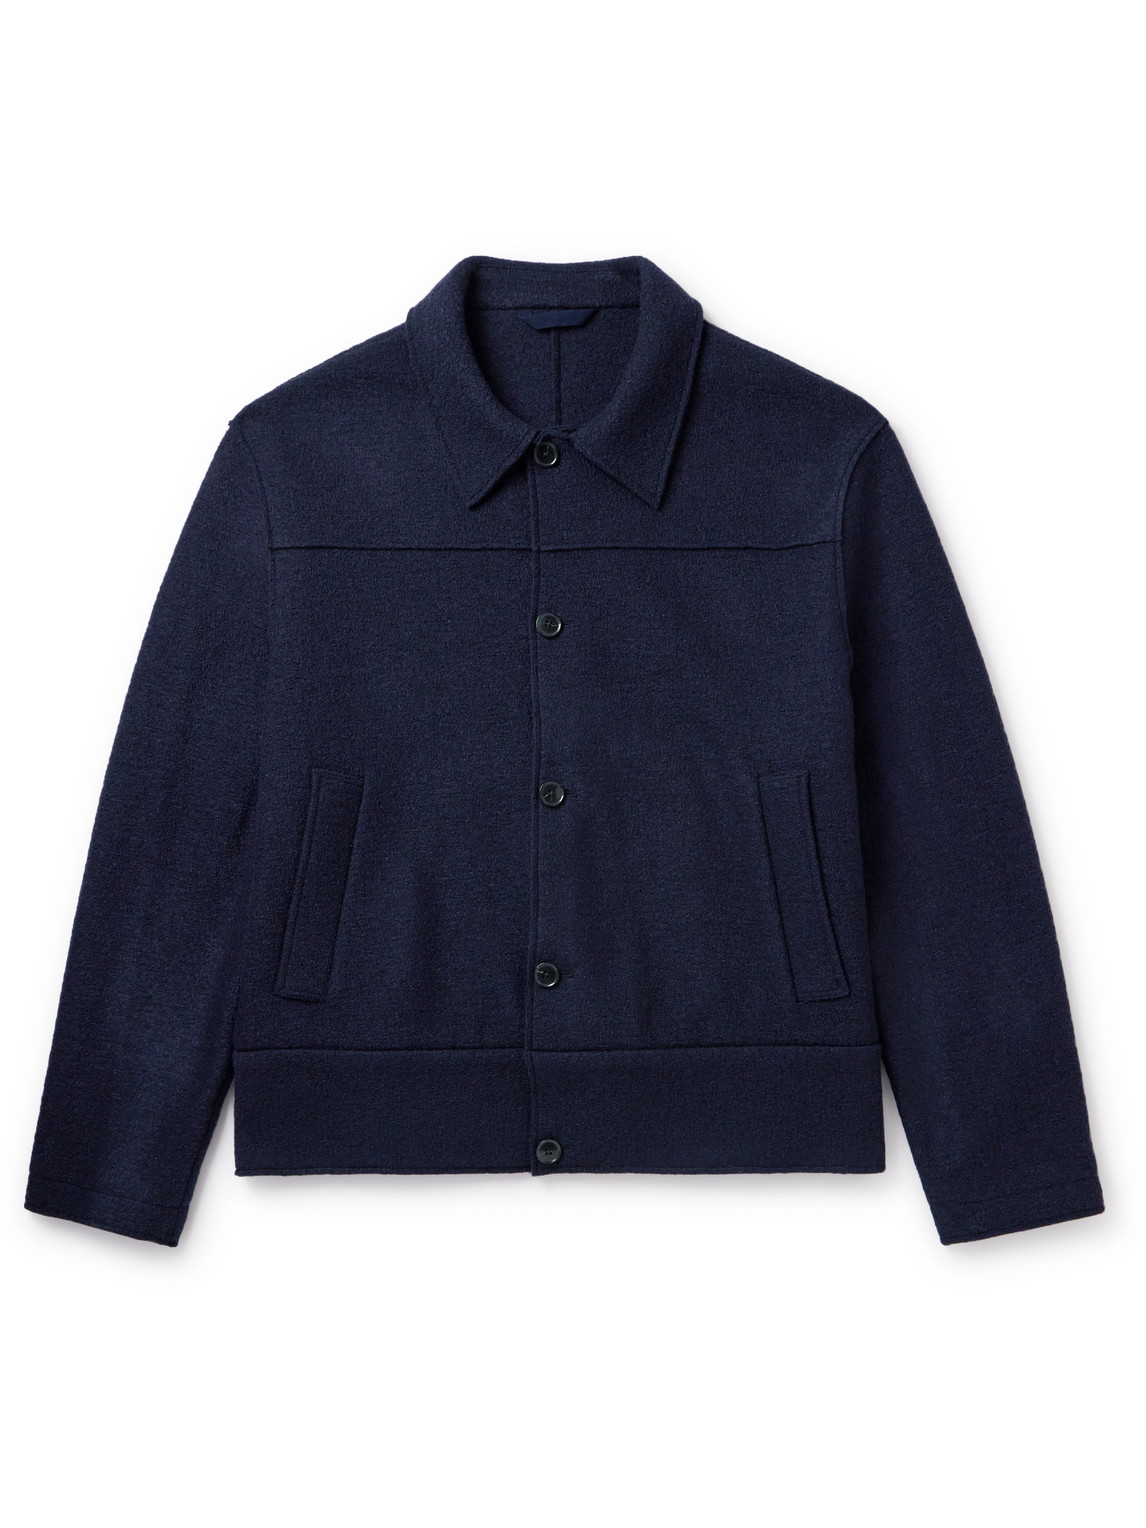 Sunspel Casely-hayford Atticus Wool Blouson Jacket In Blue